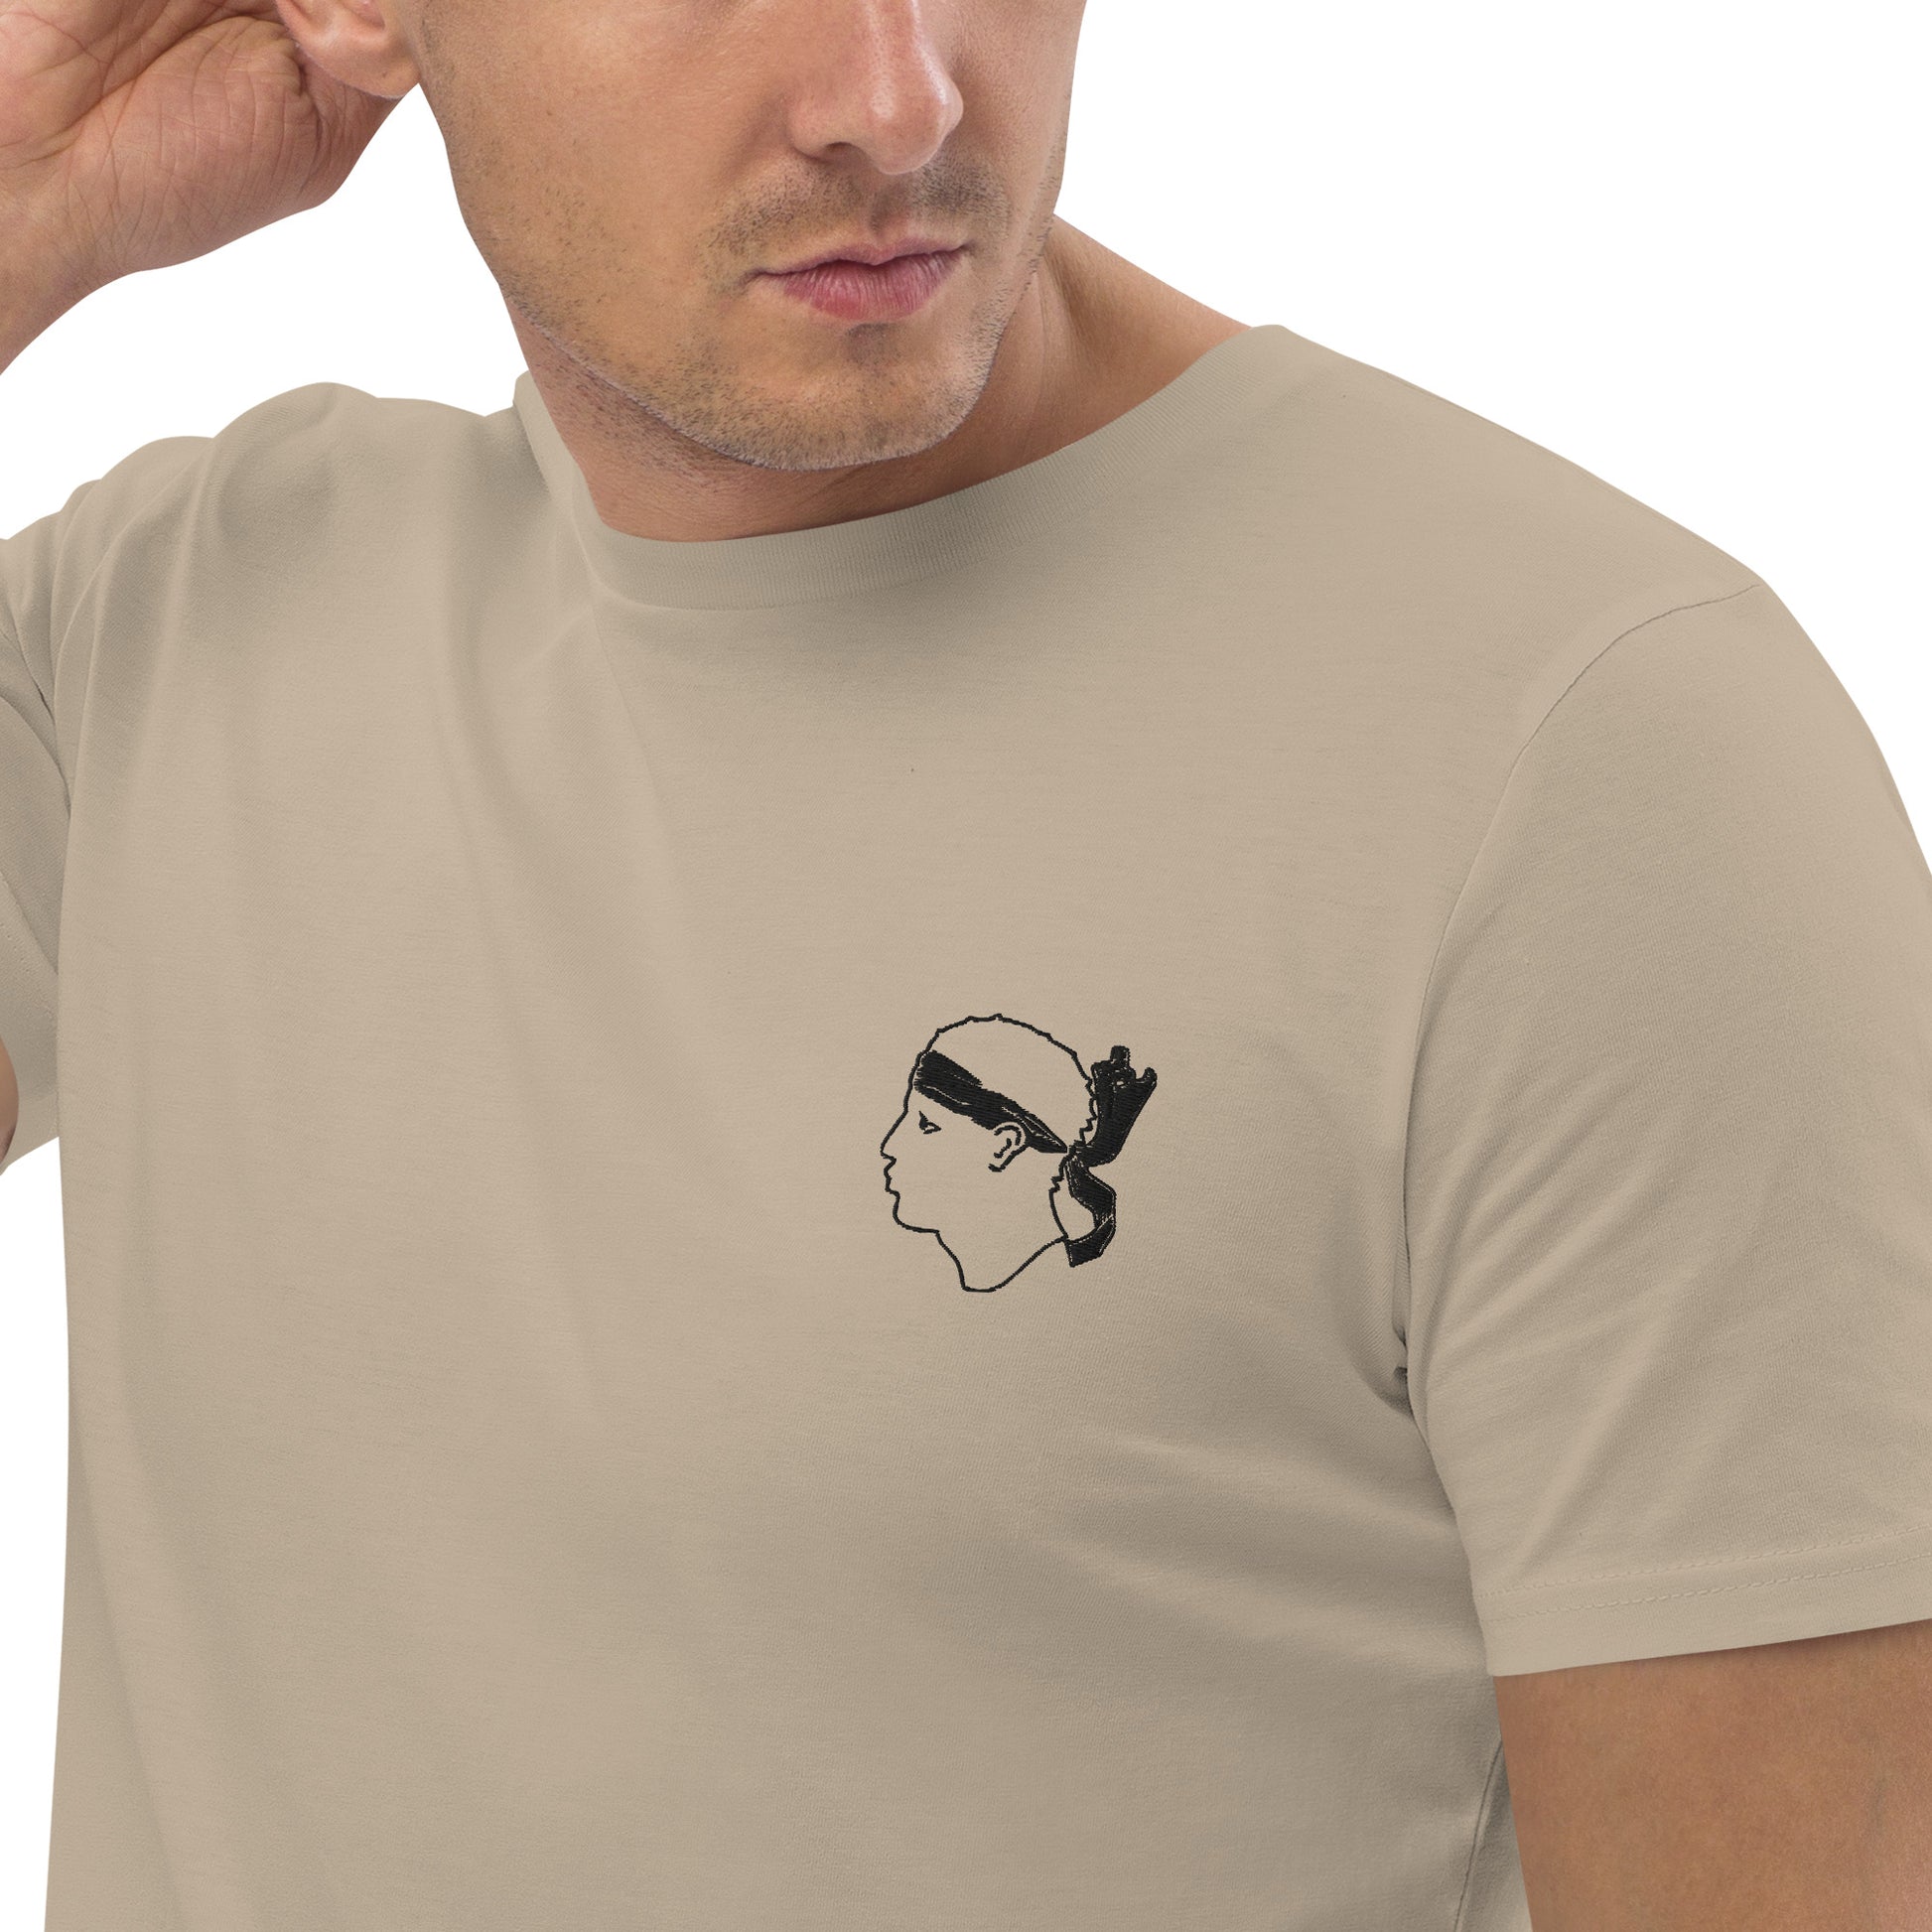 T-shirt unisexe en coton bio Tête de Maure - Ochju Ochju Desert Dust / S Ochju T-shirt unisexe en coton bio Tête de Maure